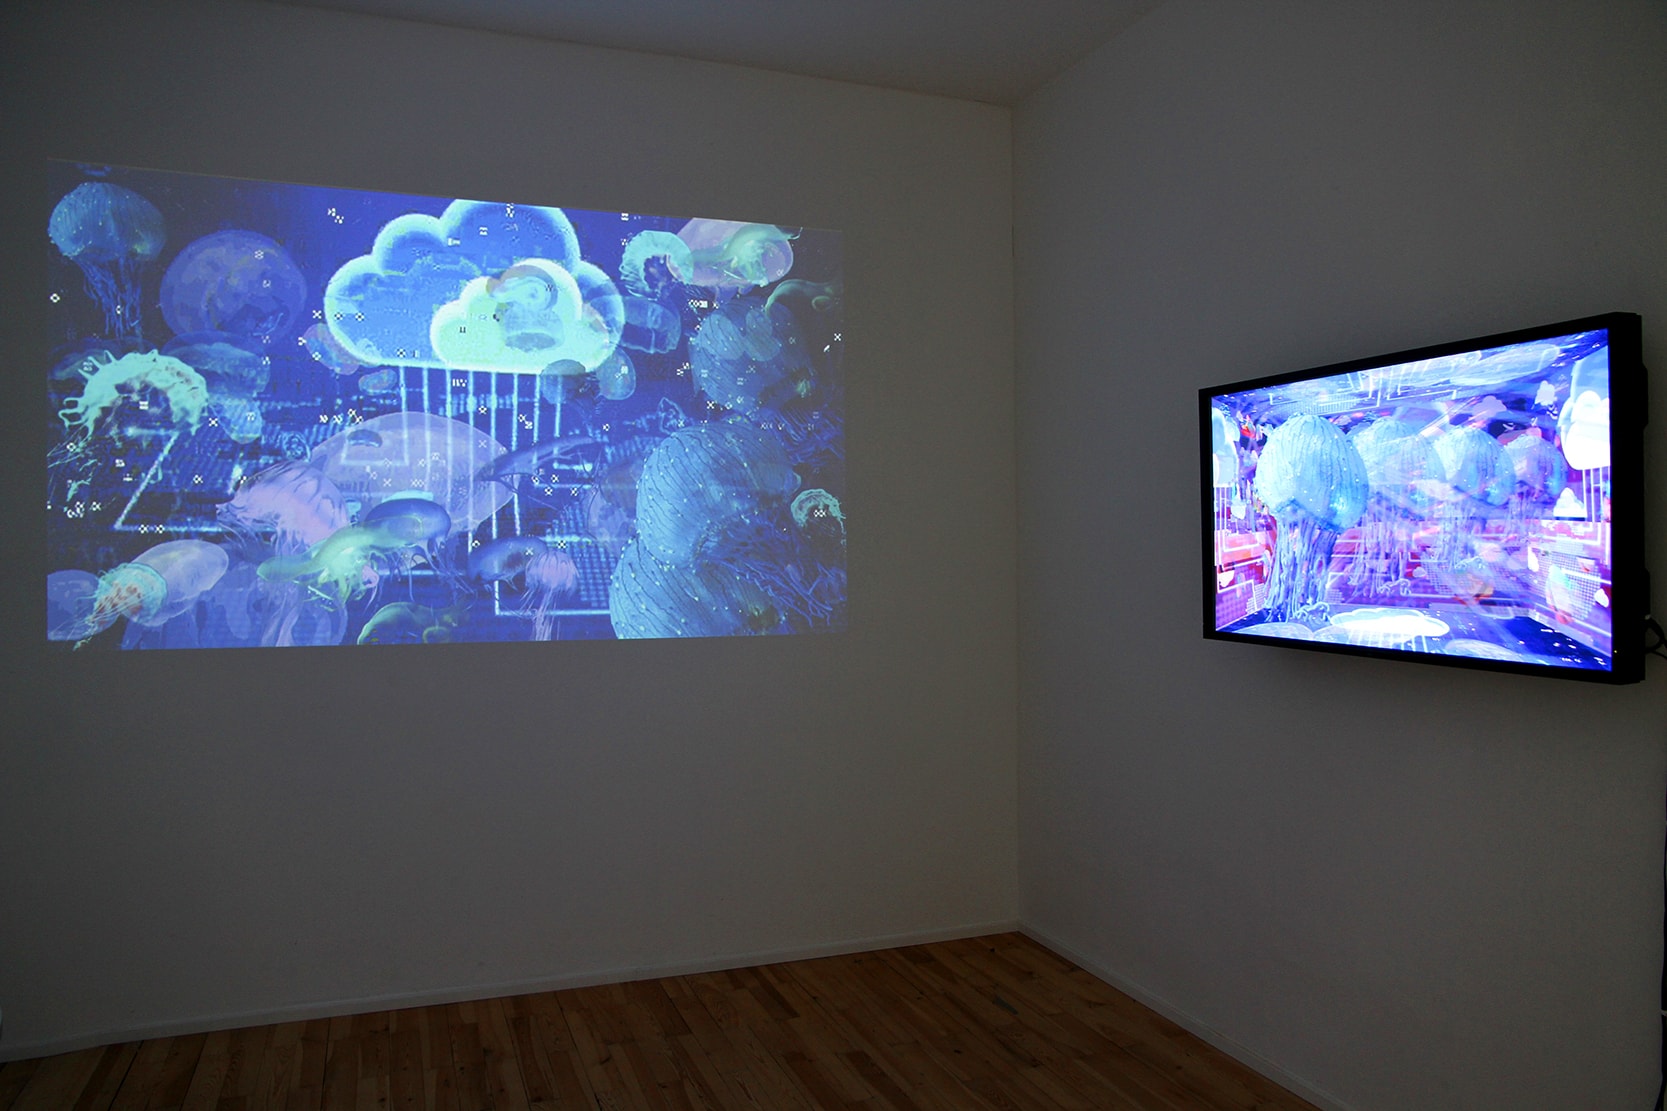 Installation view of Colonise the Cloud animations in the exhibition Einen Riesigen Schwarm, Digital Art Space Munich, 2019-2020